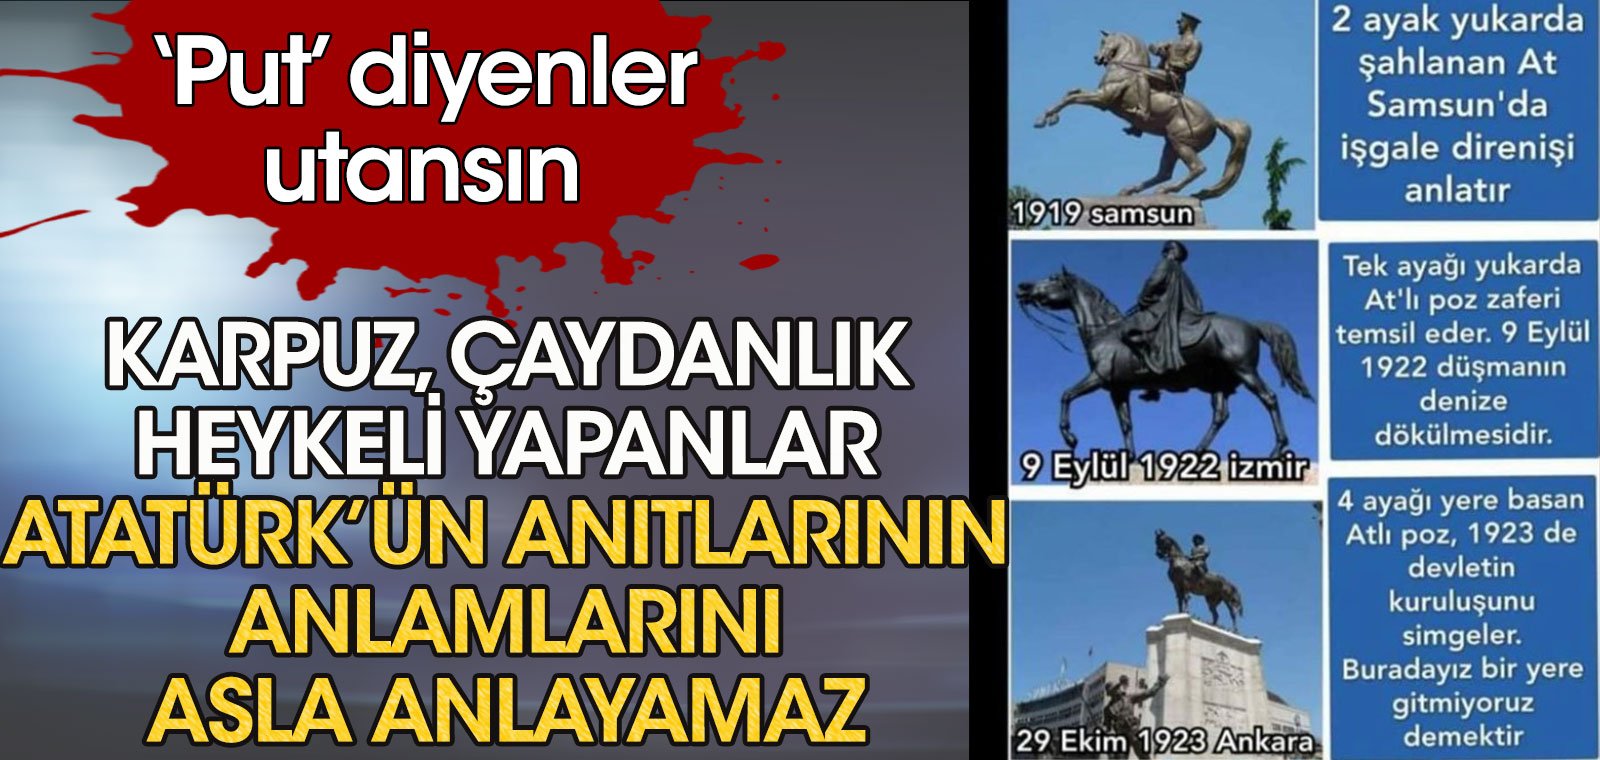 Put diyenler utansın | Karpuz, çaydanlık heykeli yapanlar Atatürk anıtlarının anlamlarını asla anlayamaz